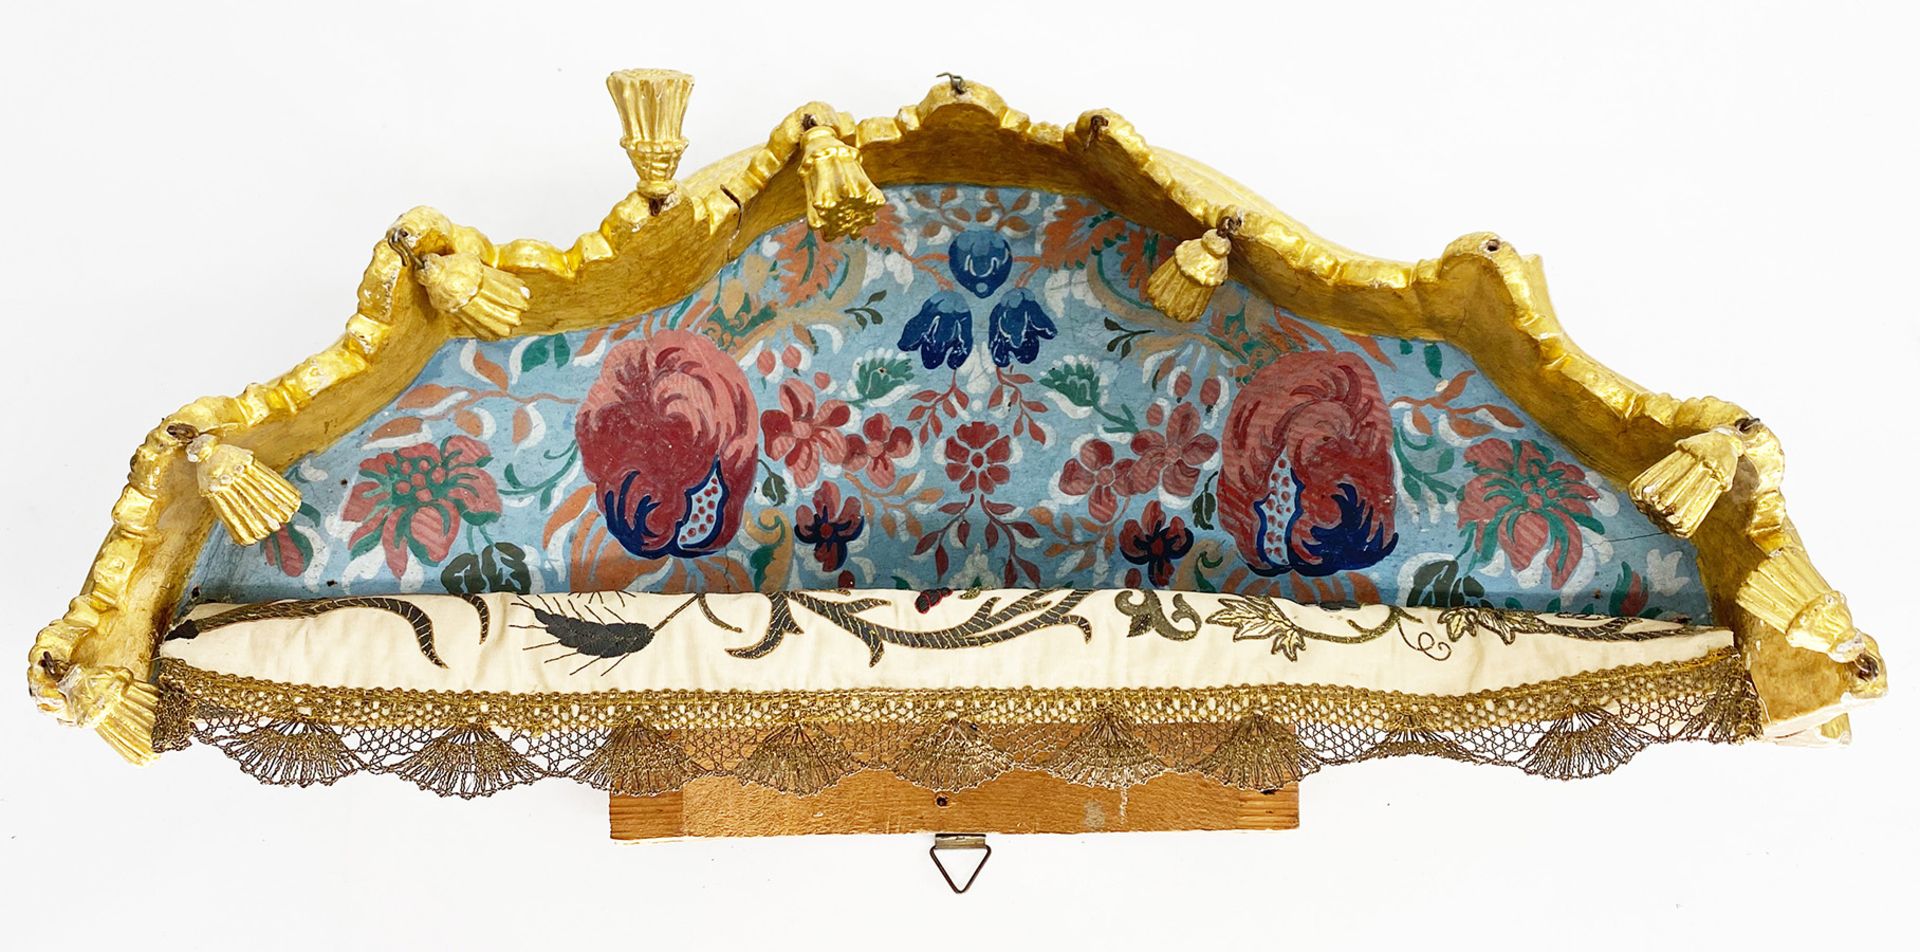 Barocker Baldachin mit geschnitztem Lambrequin sowie kleinen hängenden Quasten, Holz, farbig und - Bild 2 aus 4